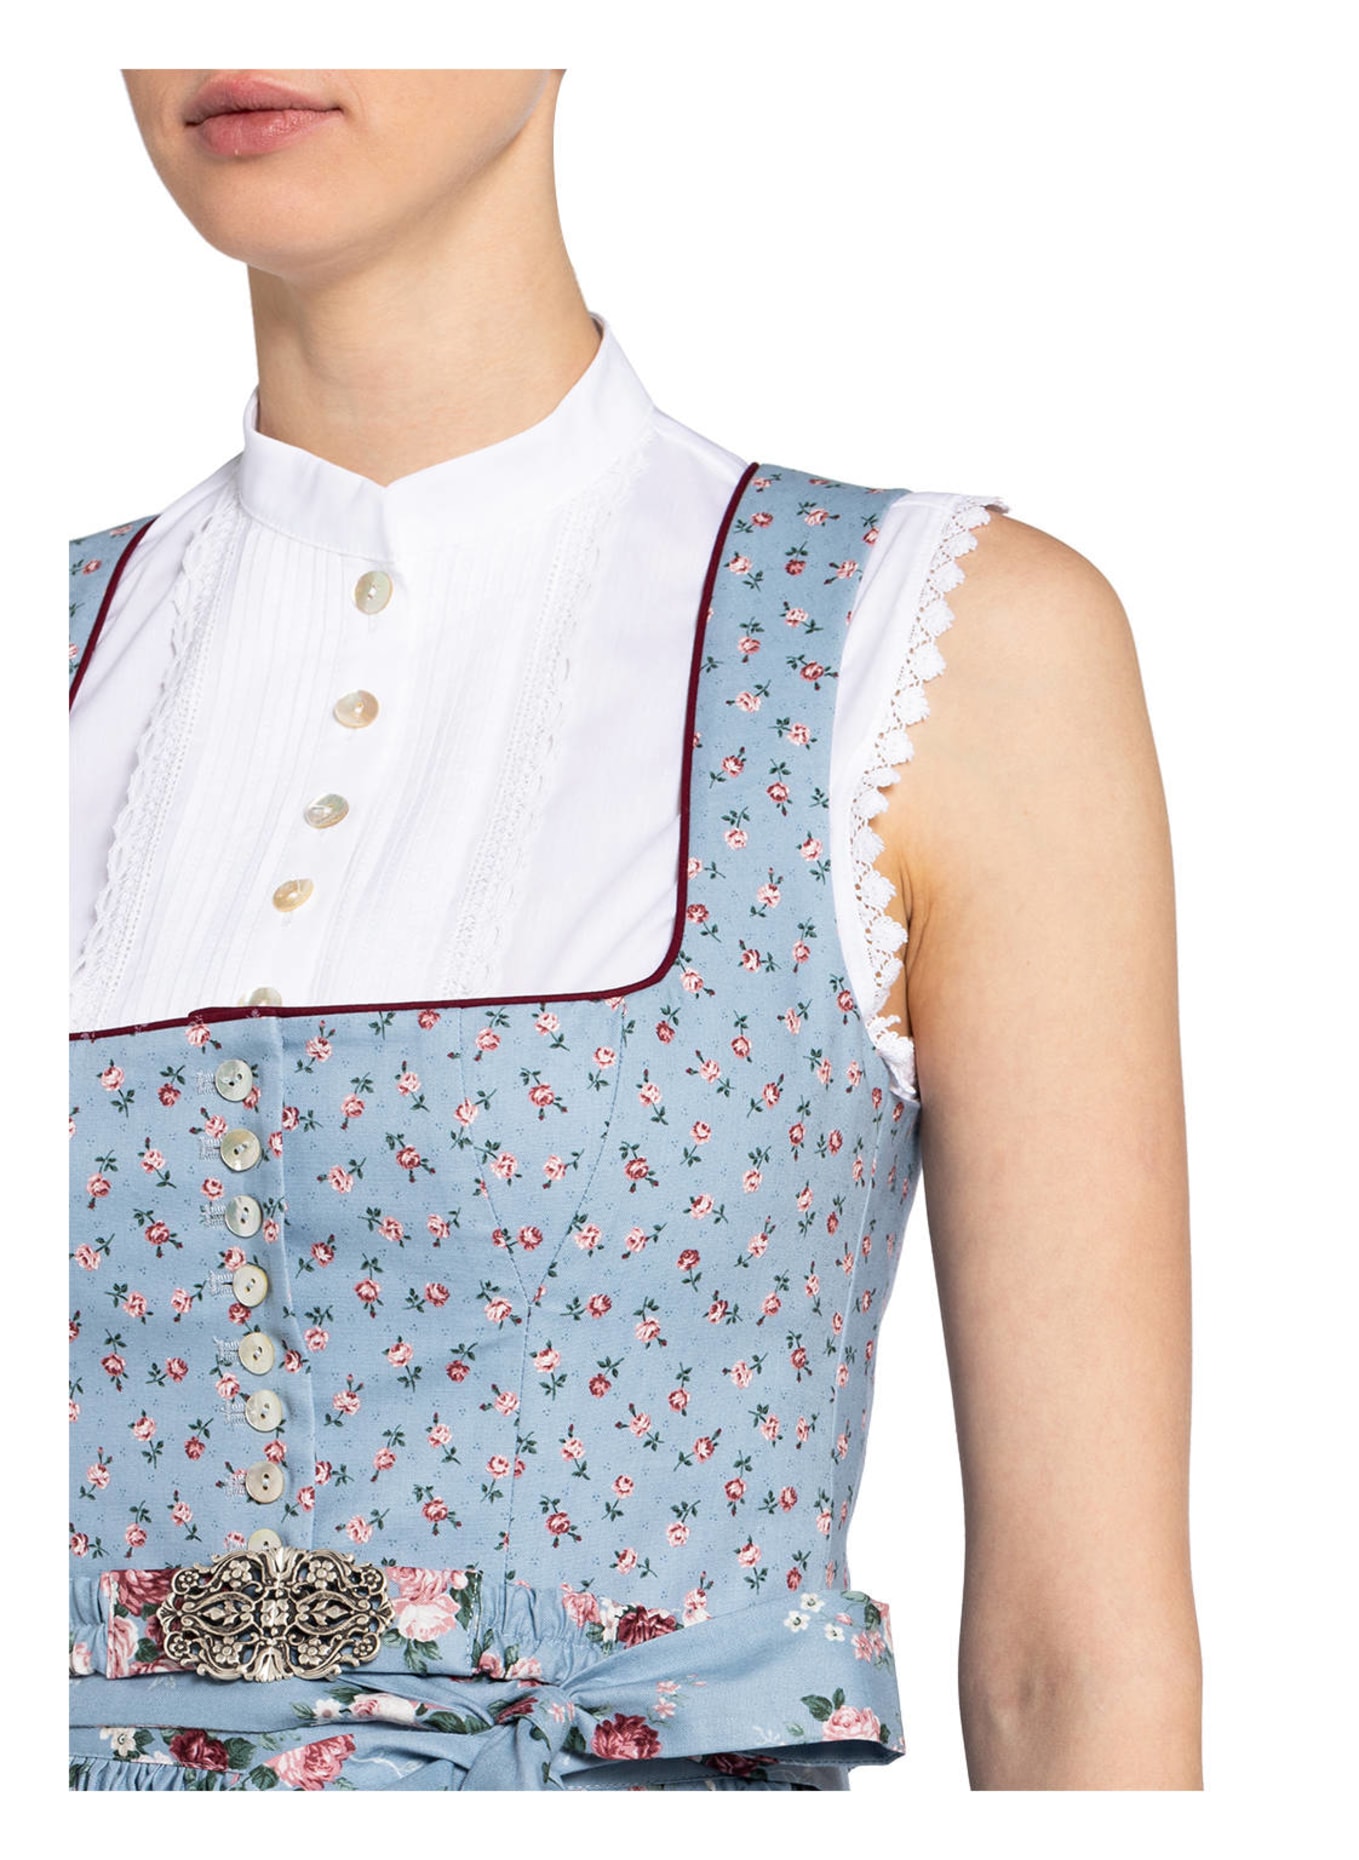 SPORTALM Dirndl blouse with lace trim, Color: WHITE (Image 2)